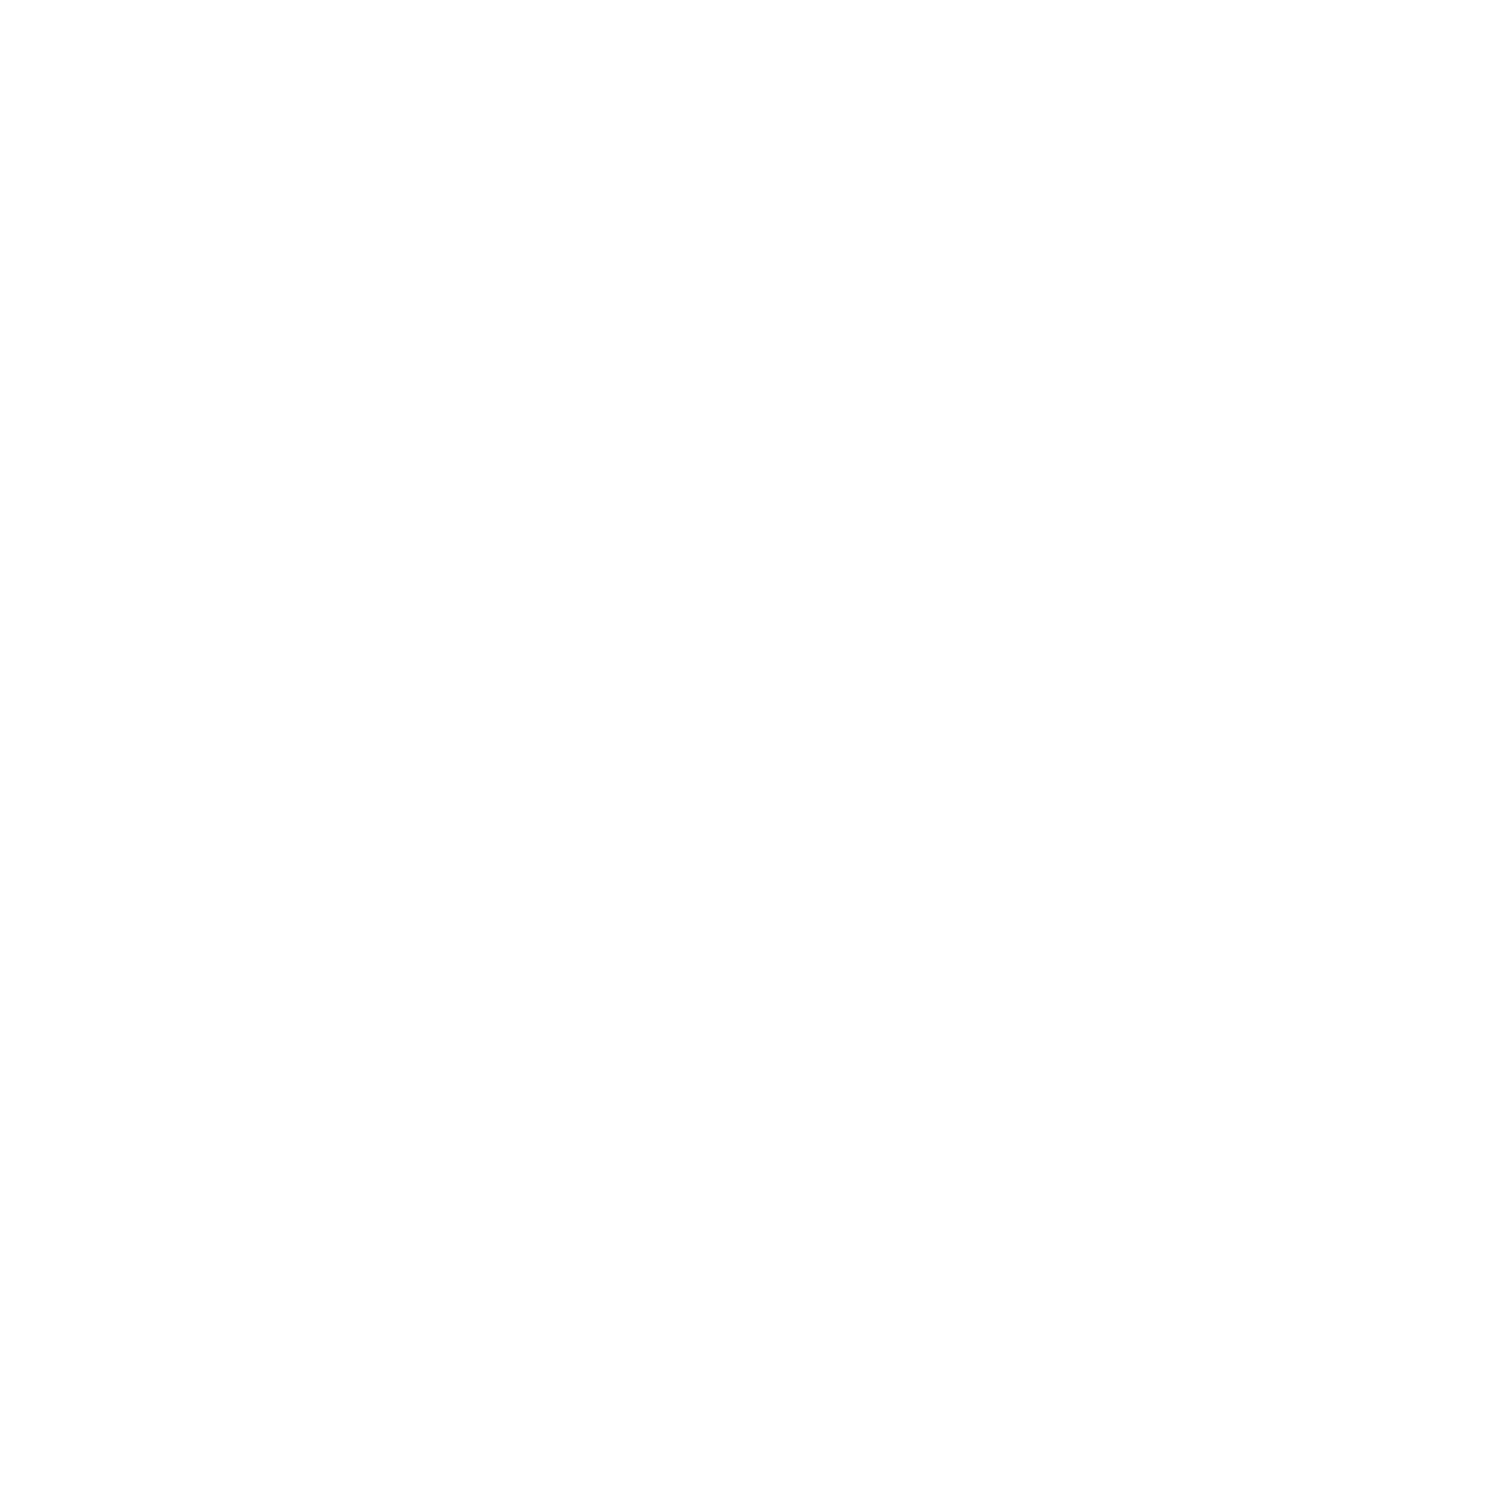 Dominus Press Ltd